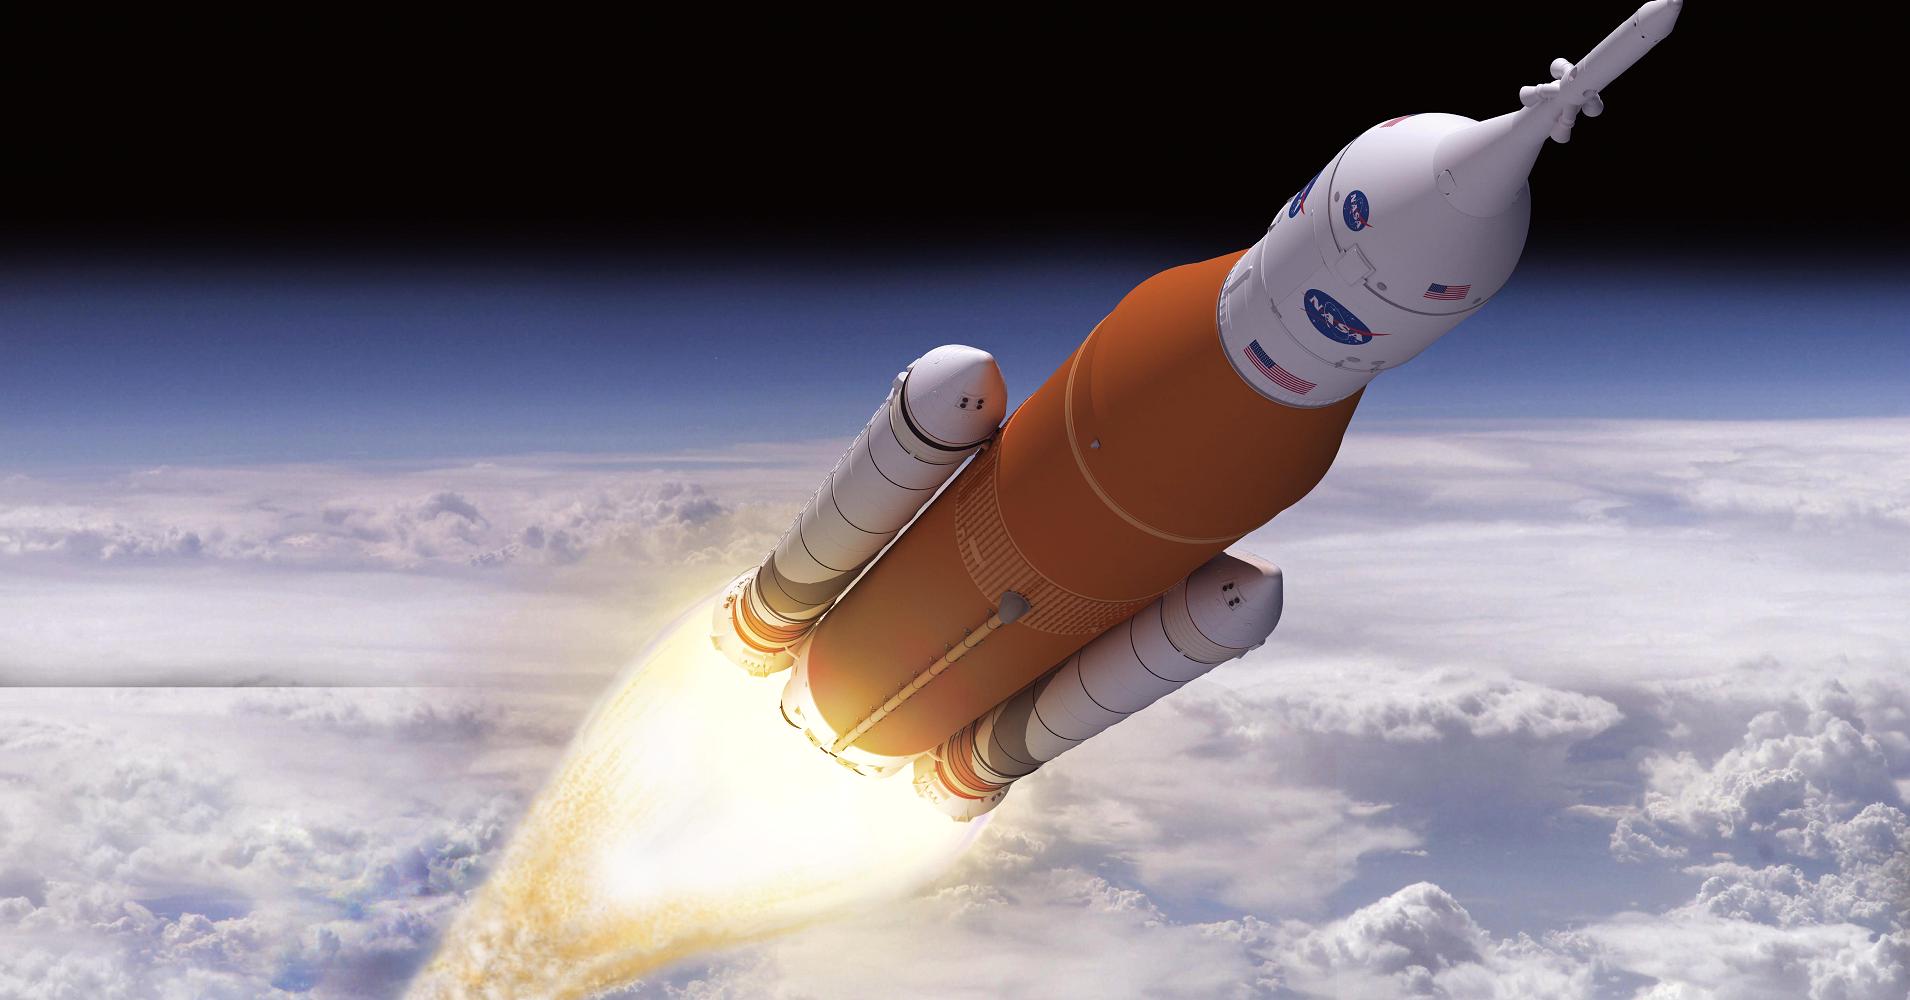 La société Boeing a l'intention de dépasser SpaceX et la première terre des hommes sur Mars